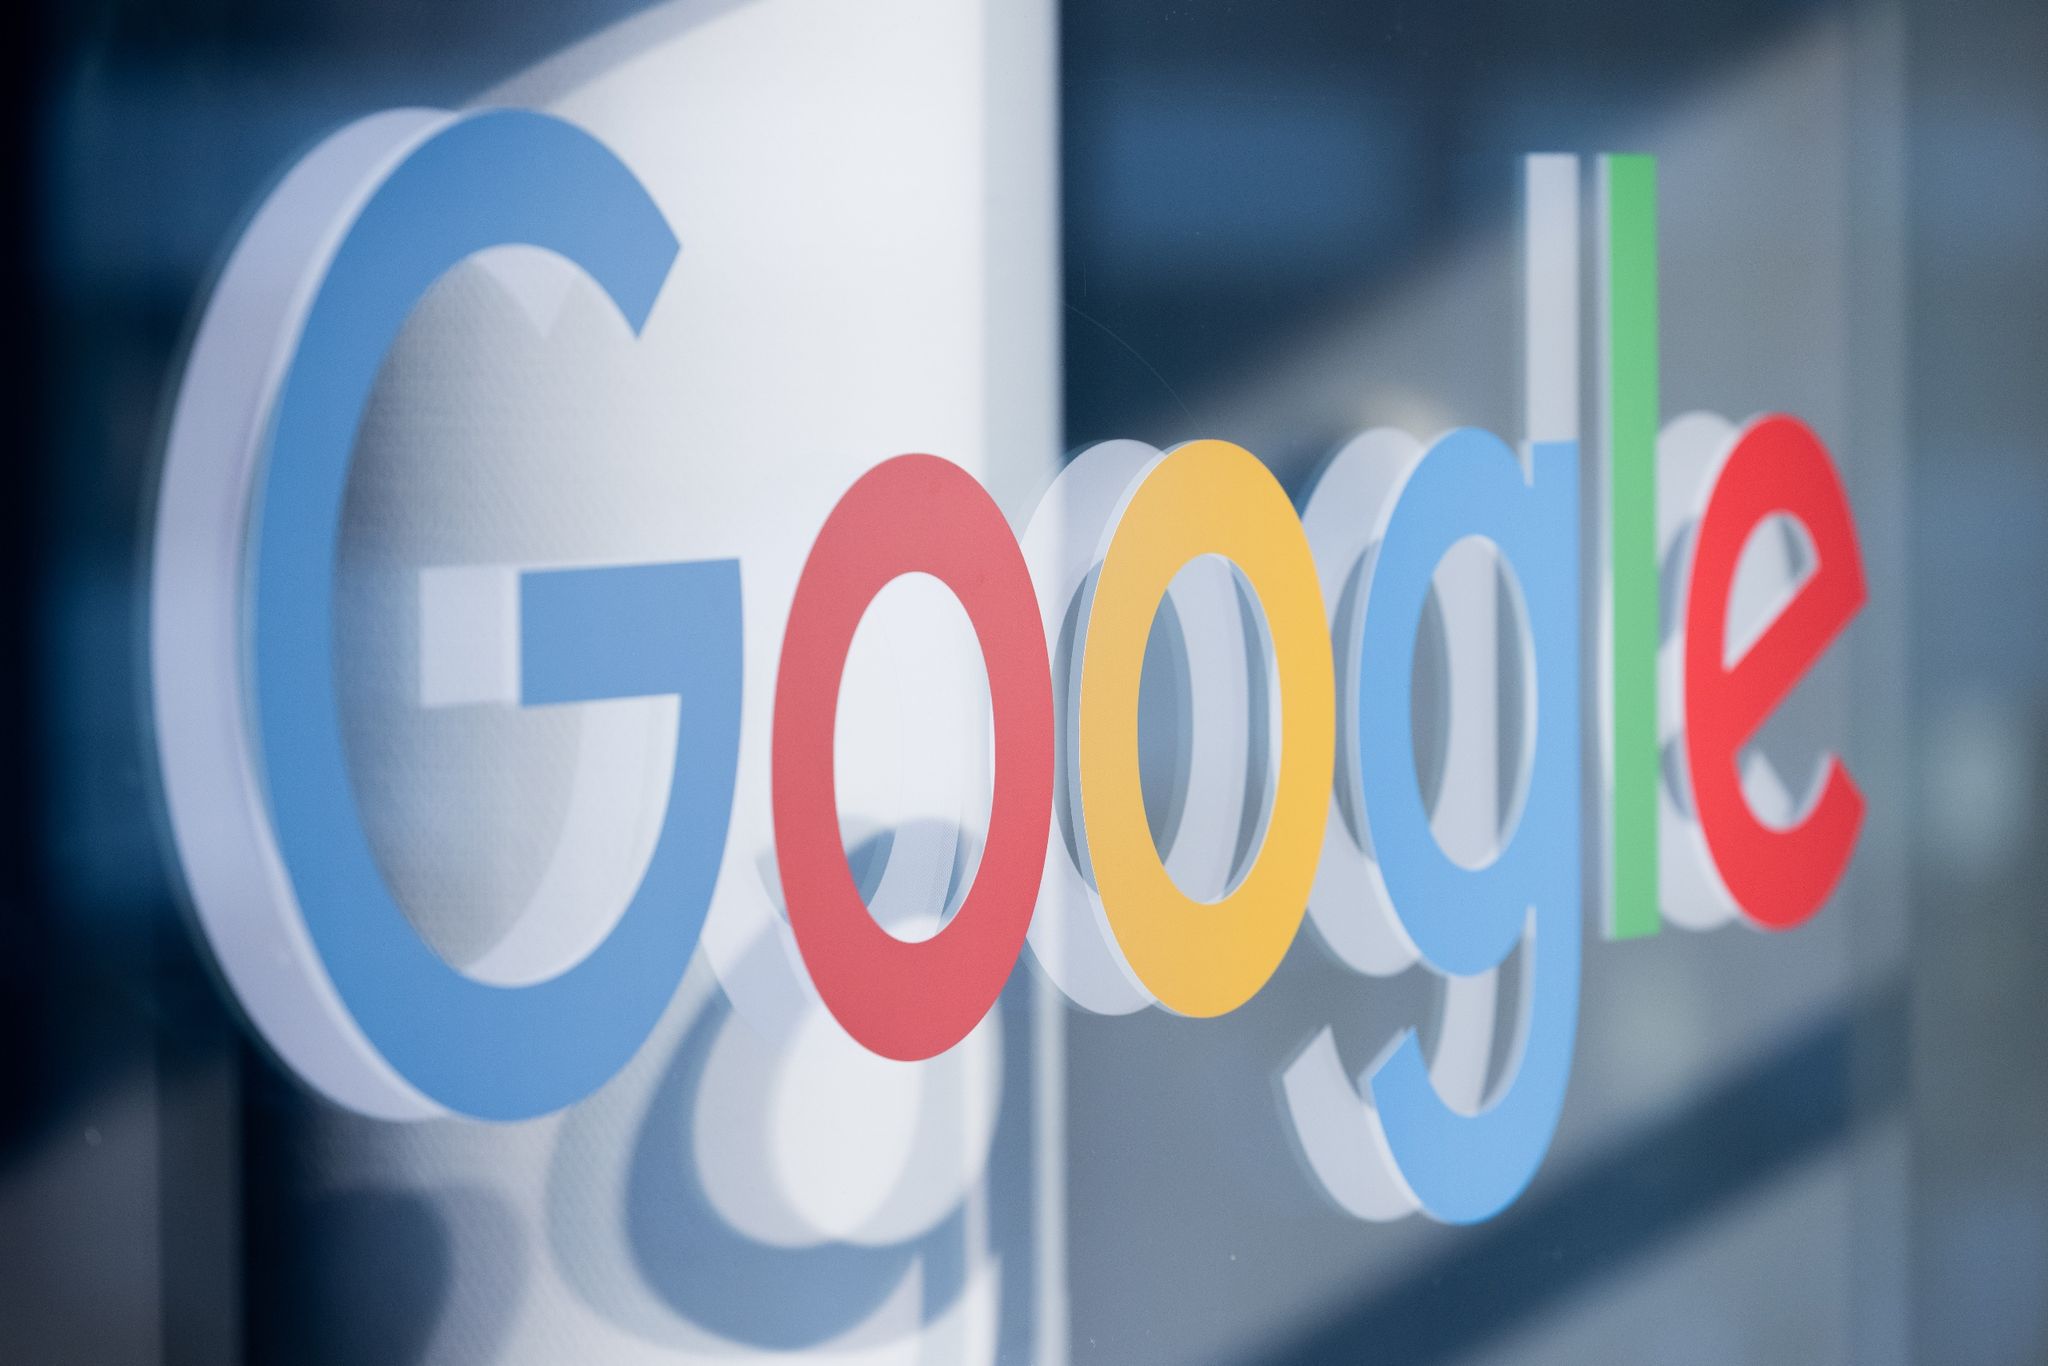 Google-Chef Sundar Pichai stellt Nutzern unter anderem eine bessere Websuche dank KI in Aussicht.